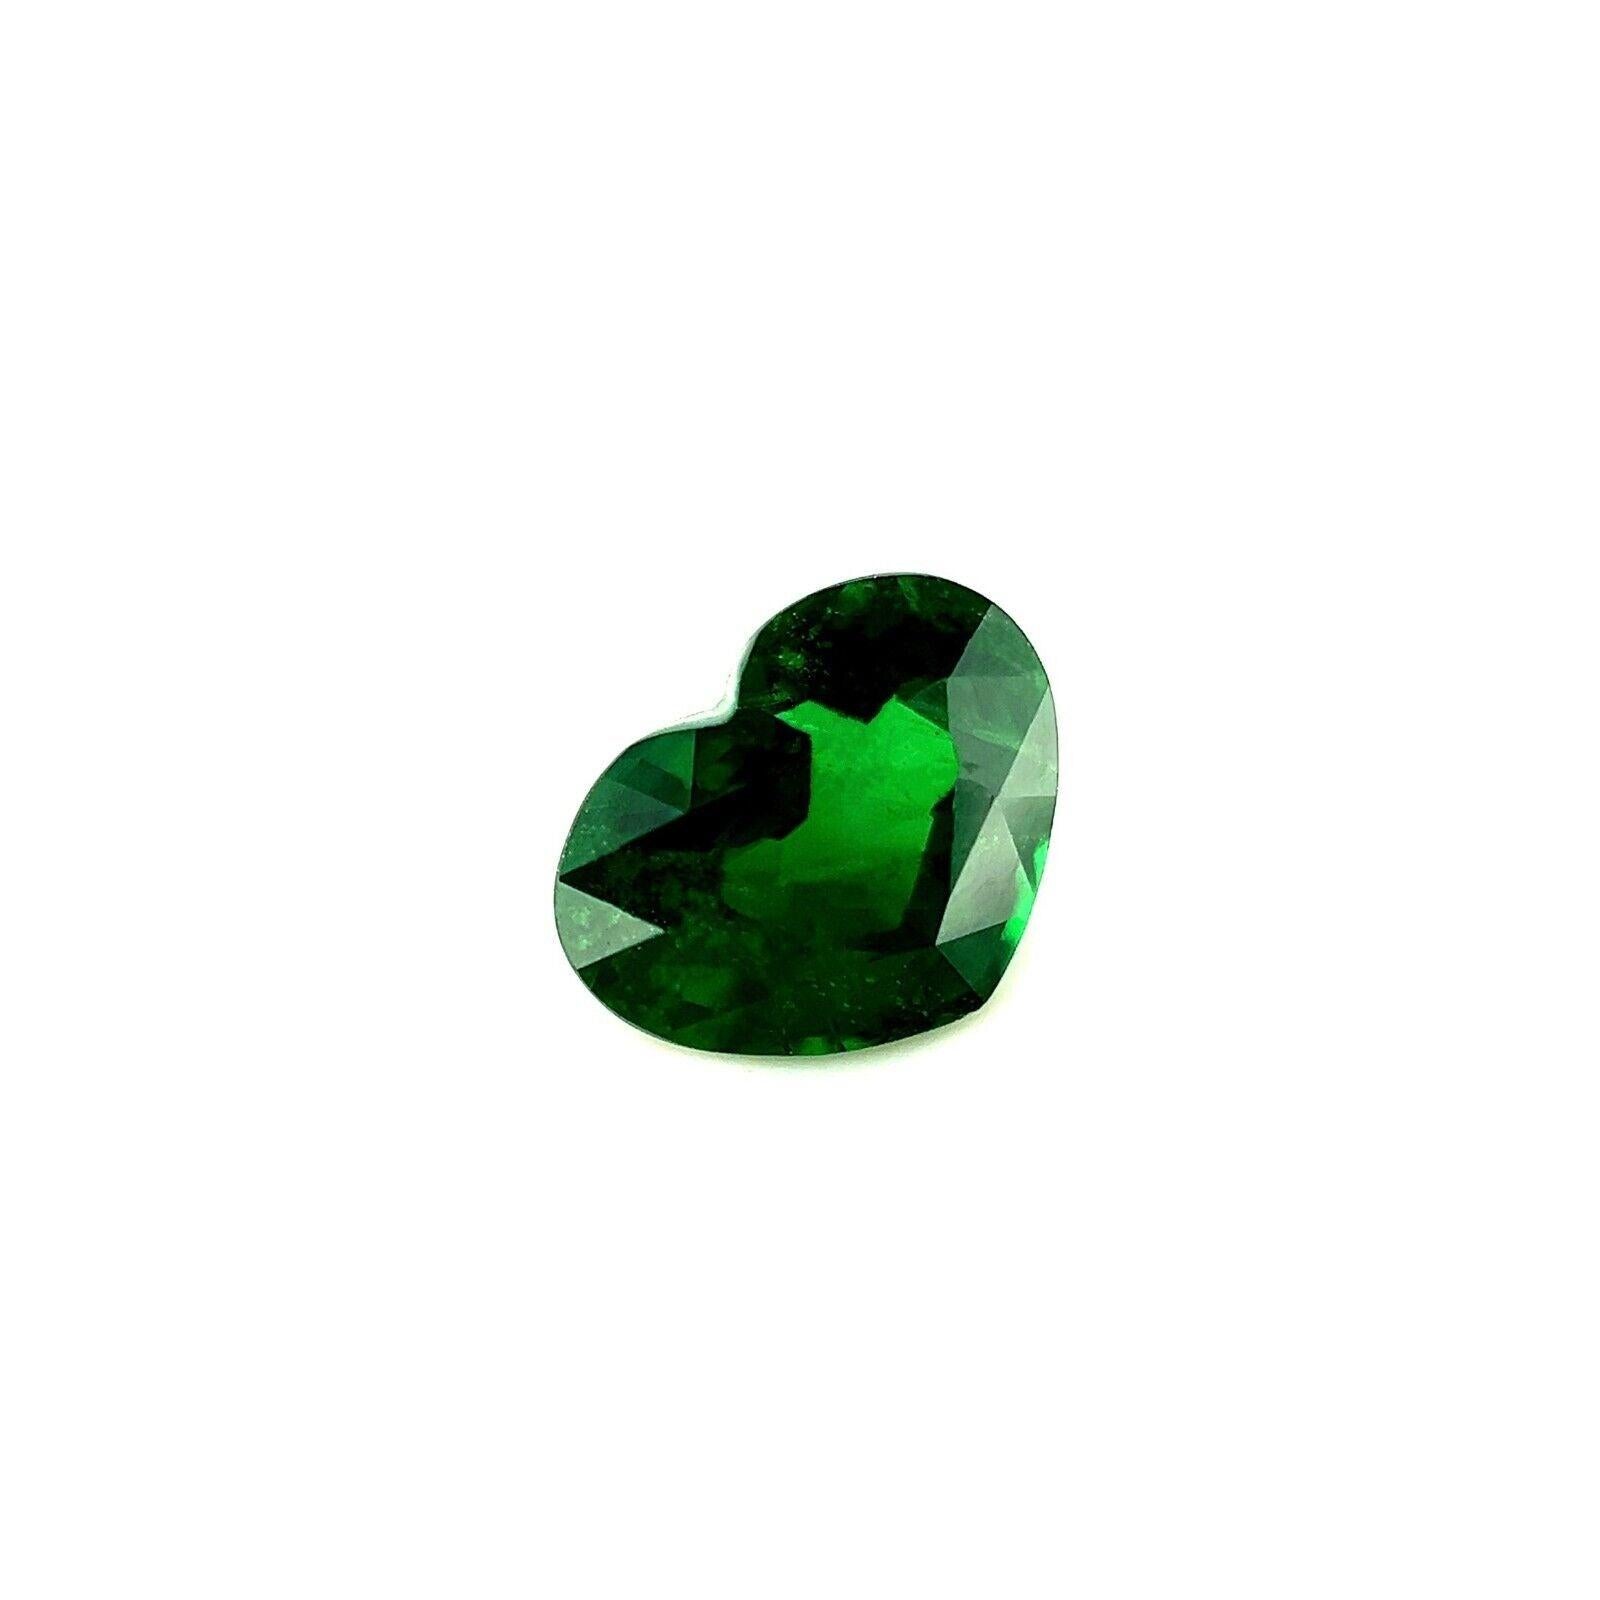 1.42ct Tsavorite Garnet Fine Colour Vivid Green Heart Cut Rare Gem 7.8x6mm

Fine pierre précieuse grenat tsavorite vert vif.
Pierre de 1,42 carat d'une belle couleur verte vive et d'une très bonne clarté. Quelques petites inclusions naturelles